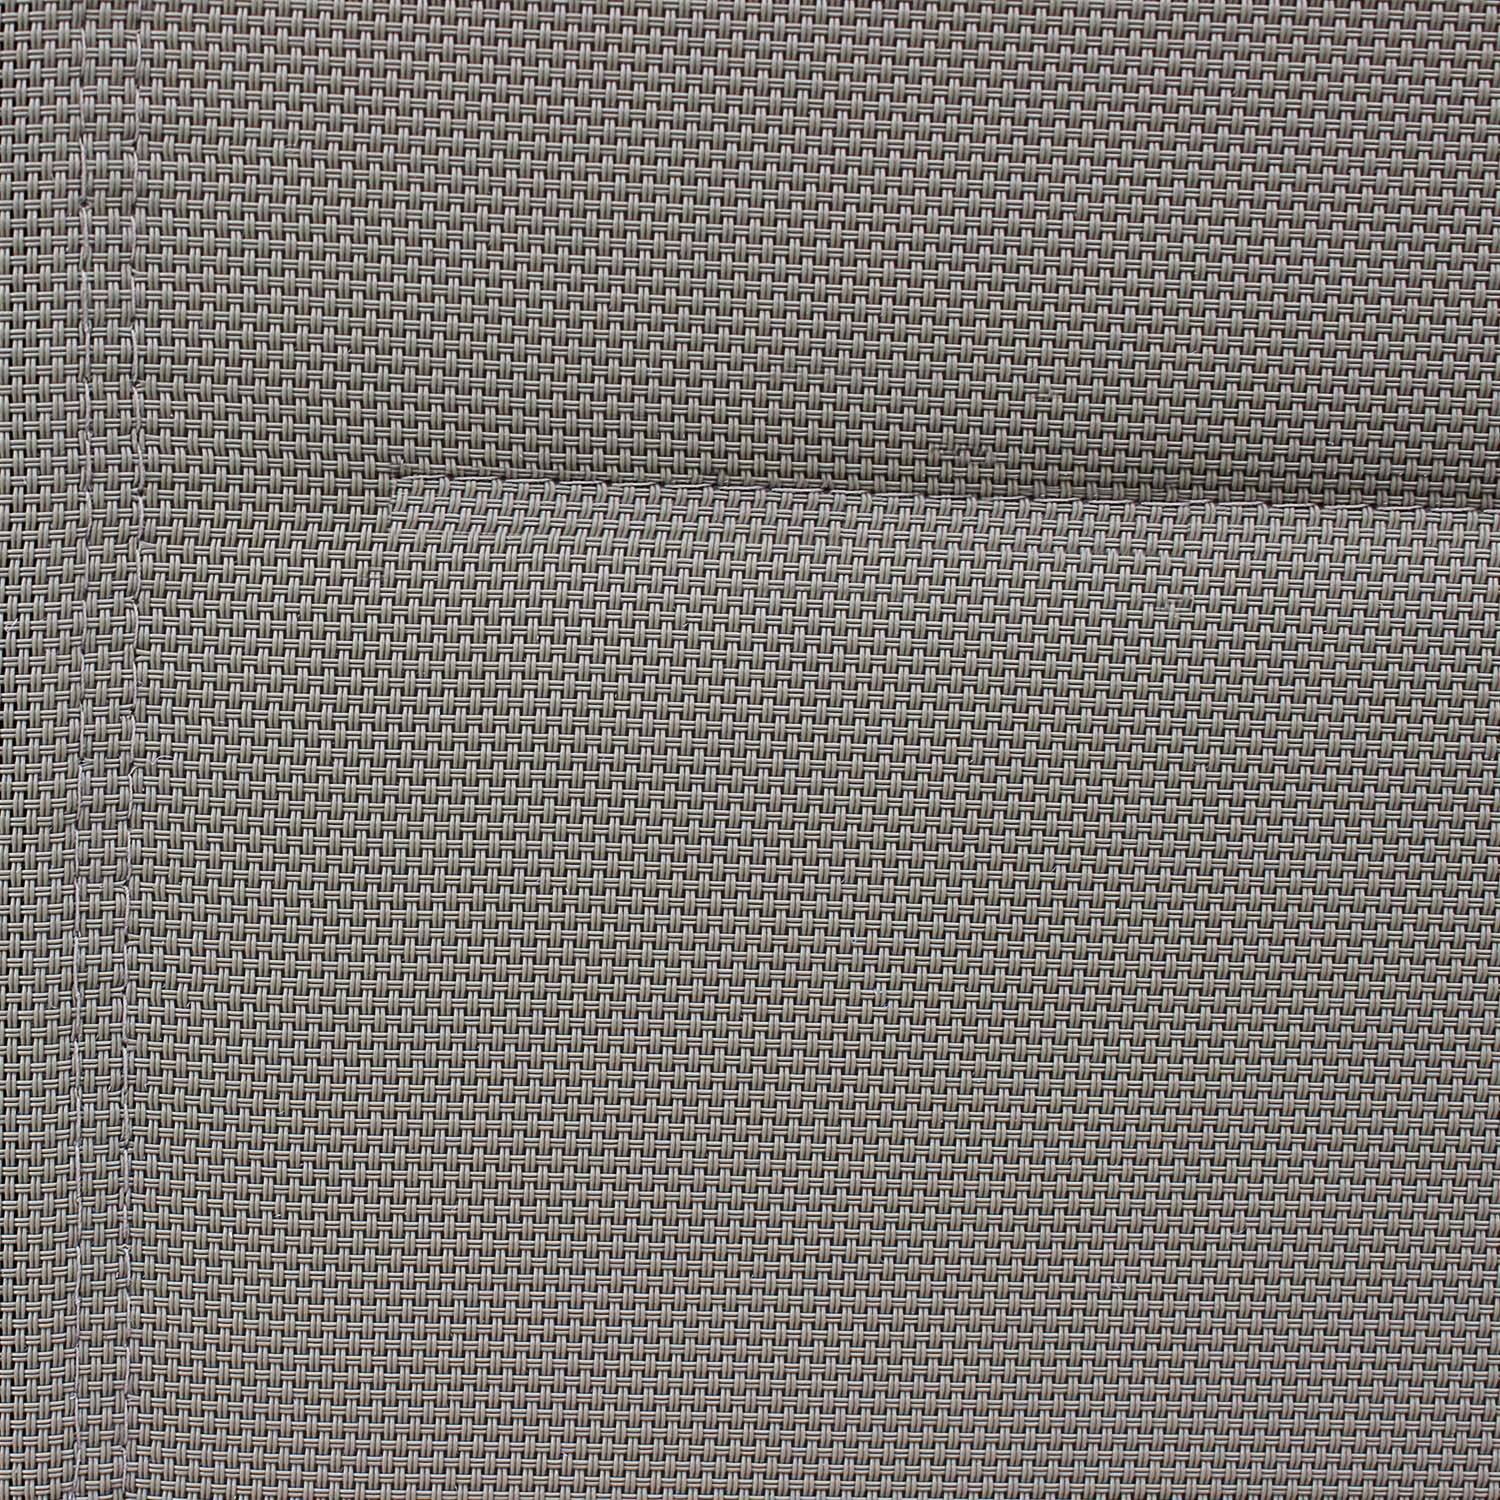 Lot de 2 fauteuils Chicago - Aluminium blanc et textilène taupe, empilables Photo3